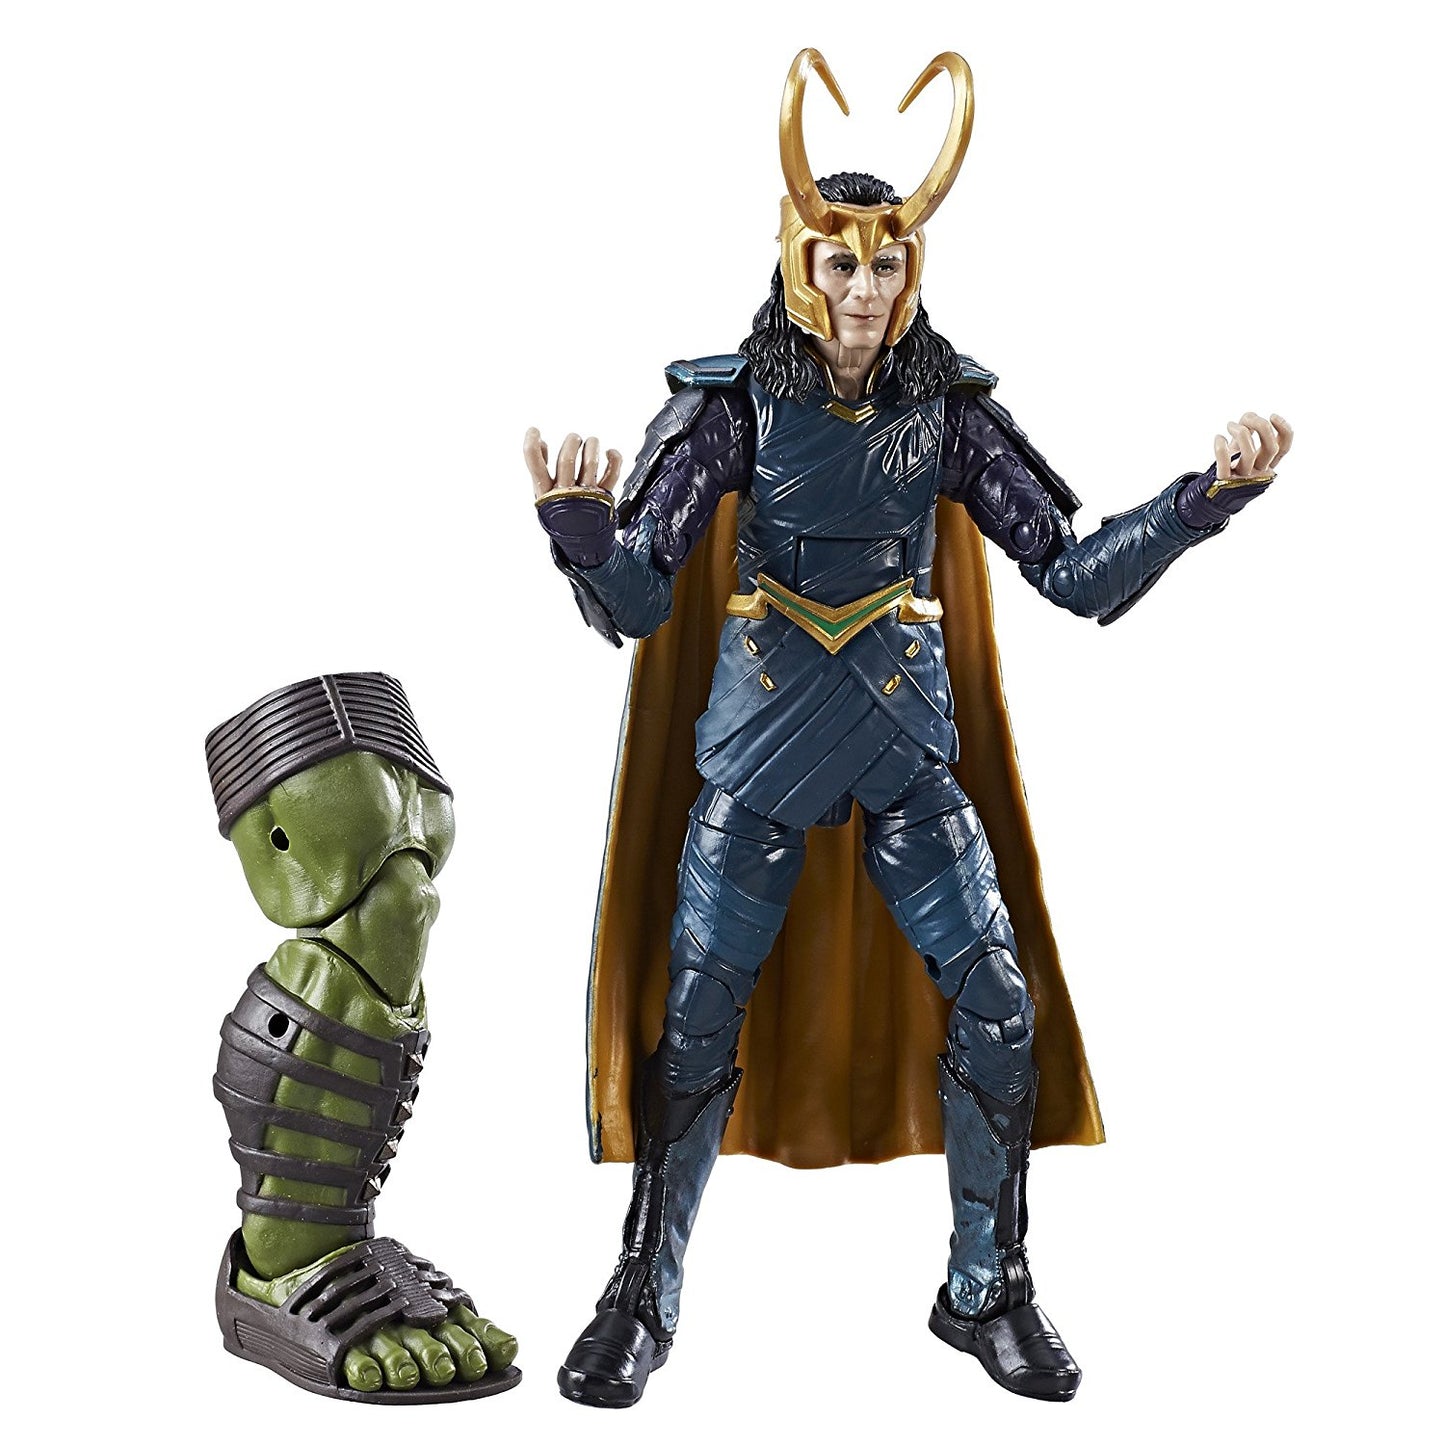 Marvel Legends Thor Ragnarok Action Figures Bundle (Build Hulk)